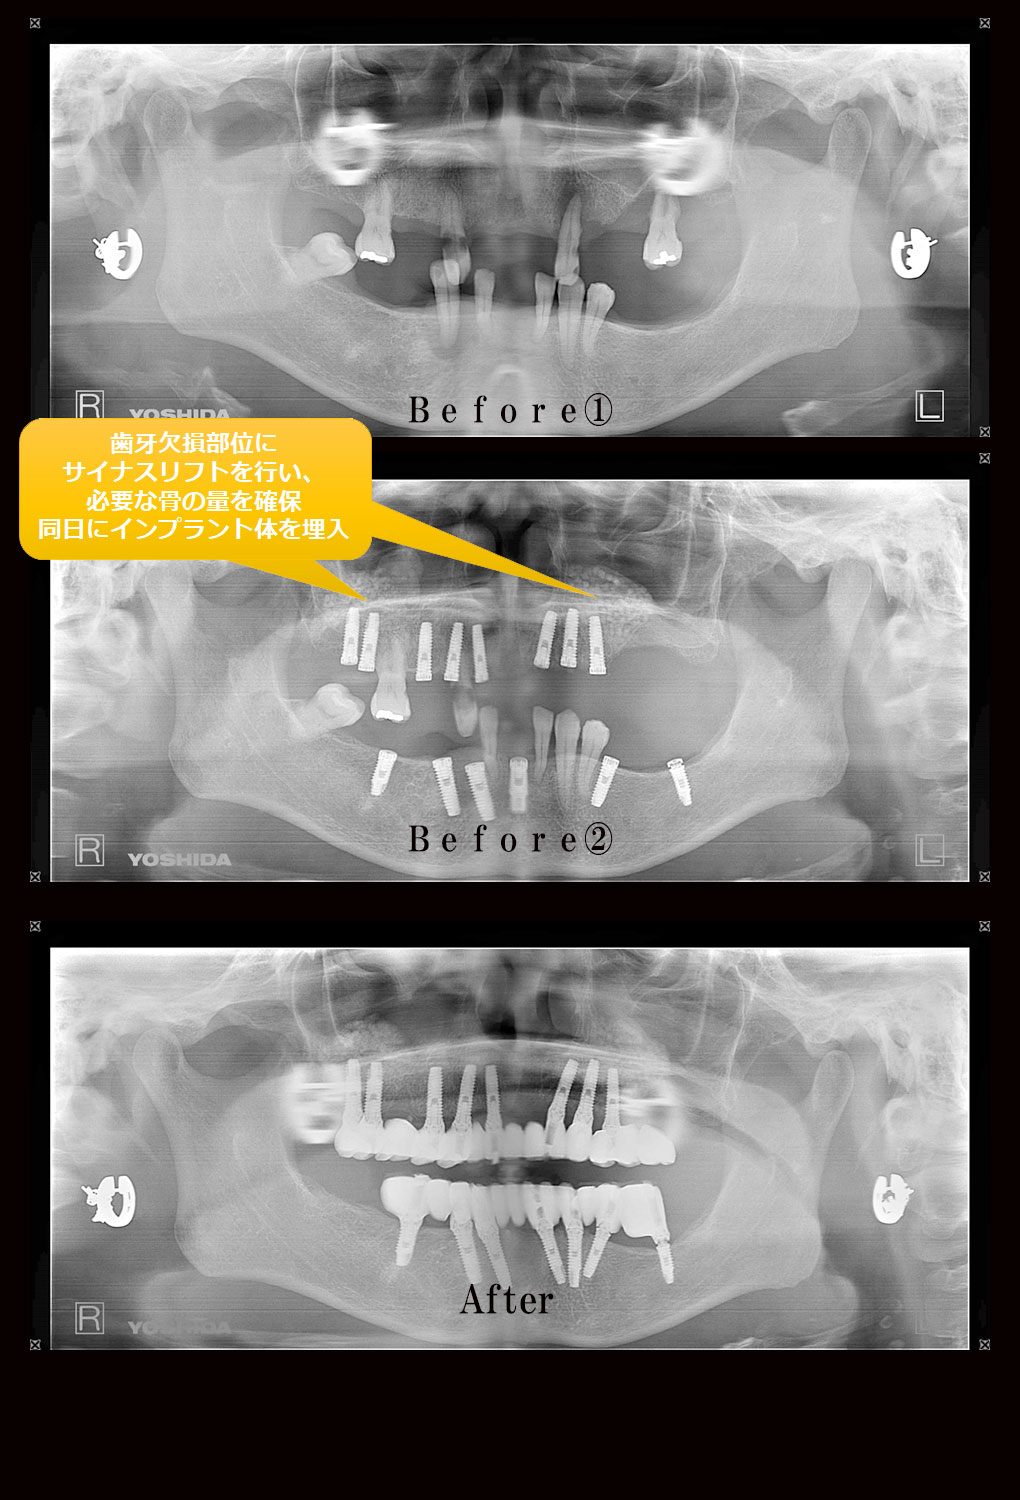 多数歯欠損ケース4のレントゲン比較の写真